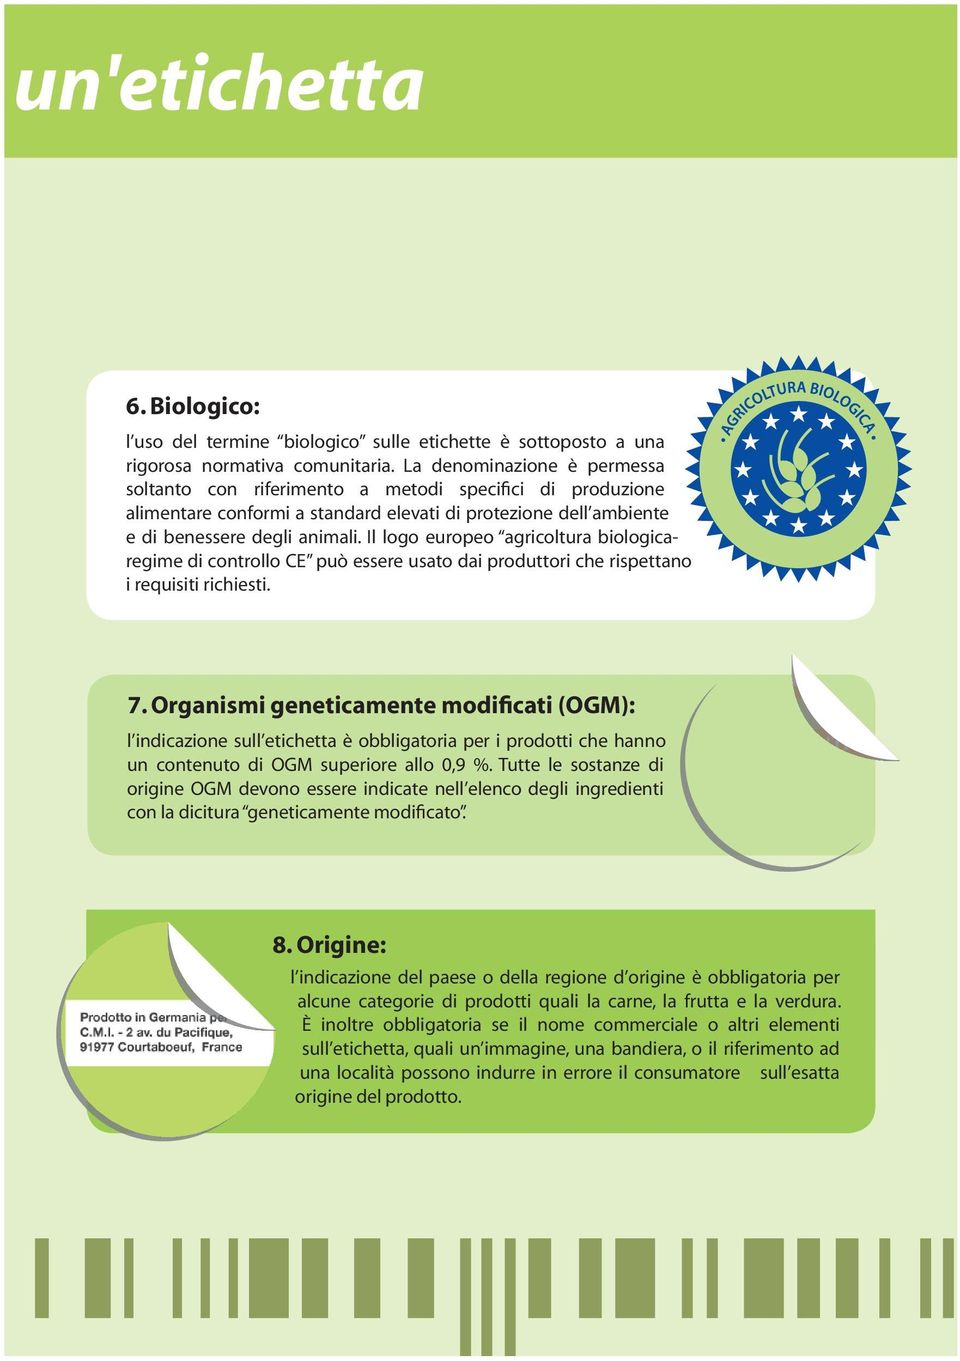 Il logo europeo agricoltura biologicaregime di controllo CE può essere usato dai produttori che rispettano i requisiti richiesti. 7.